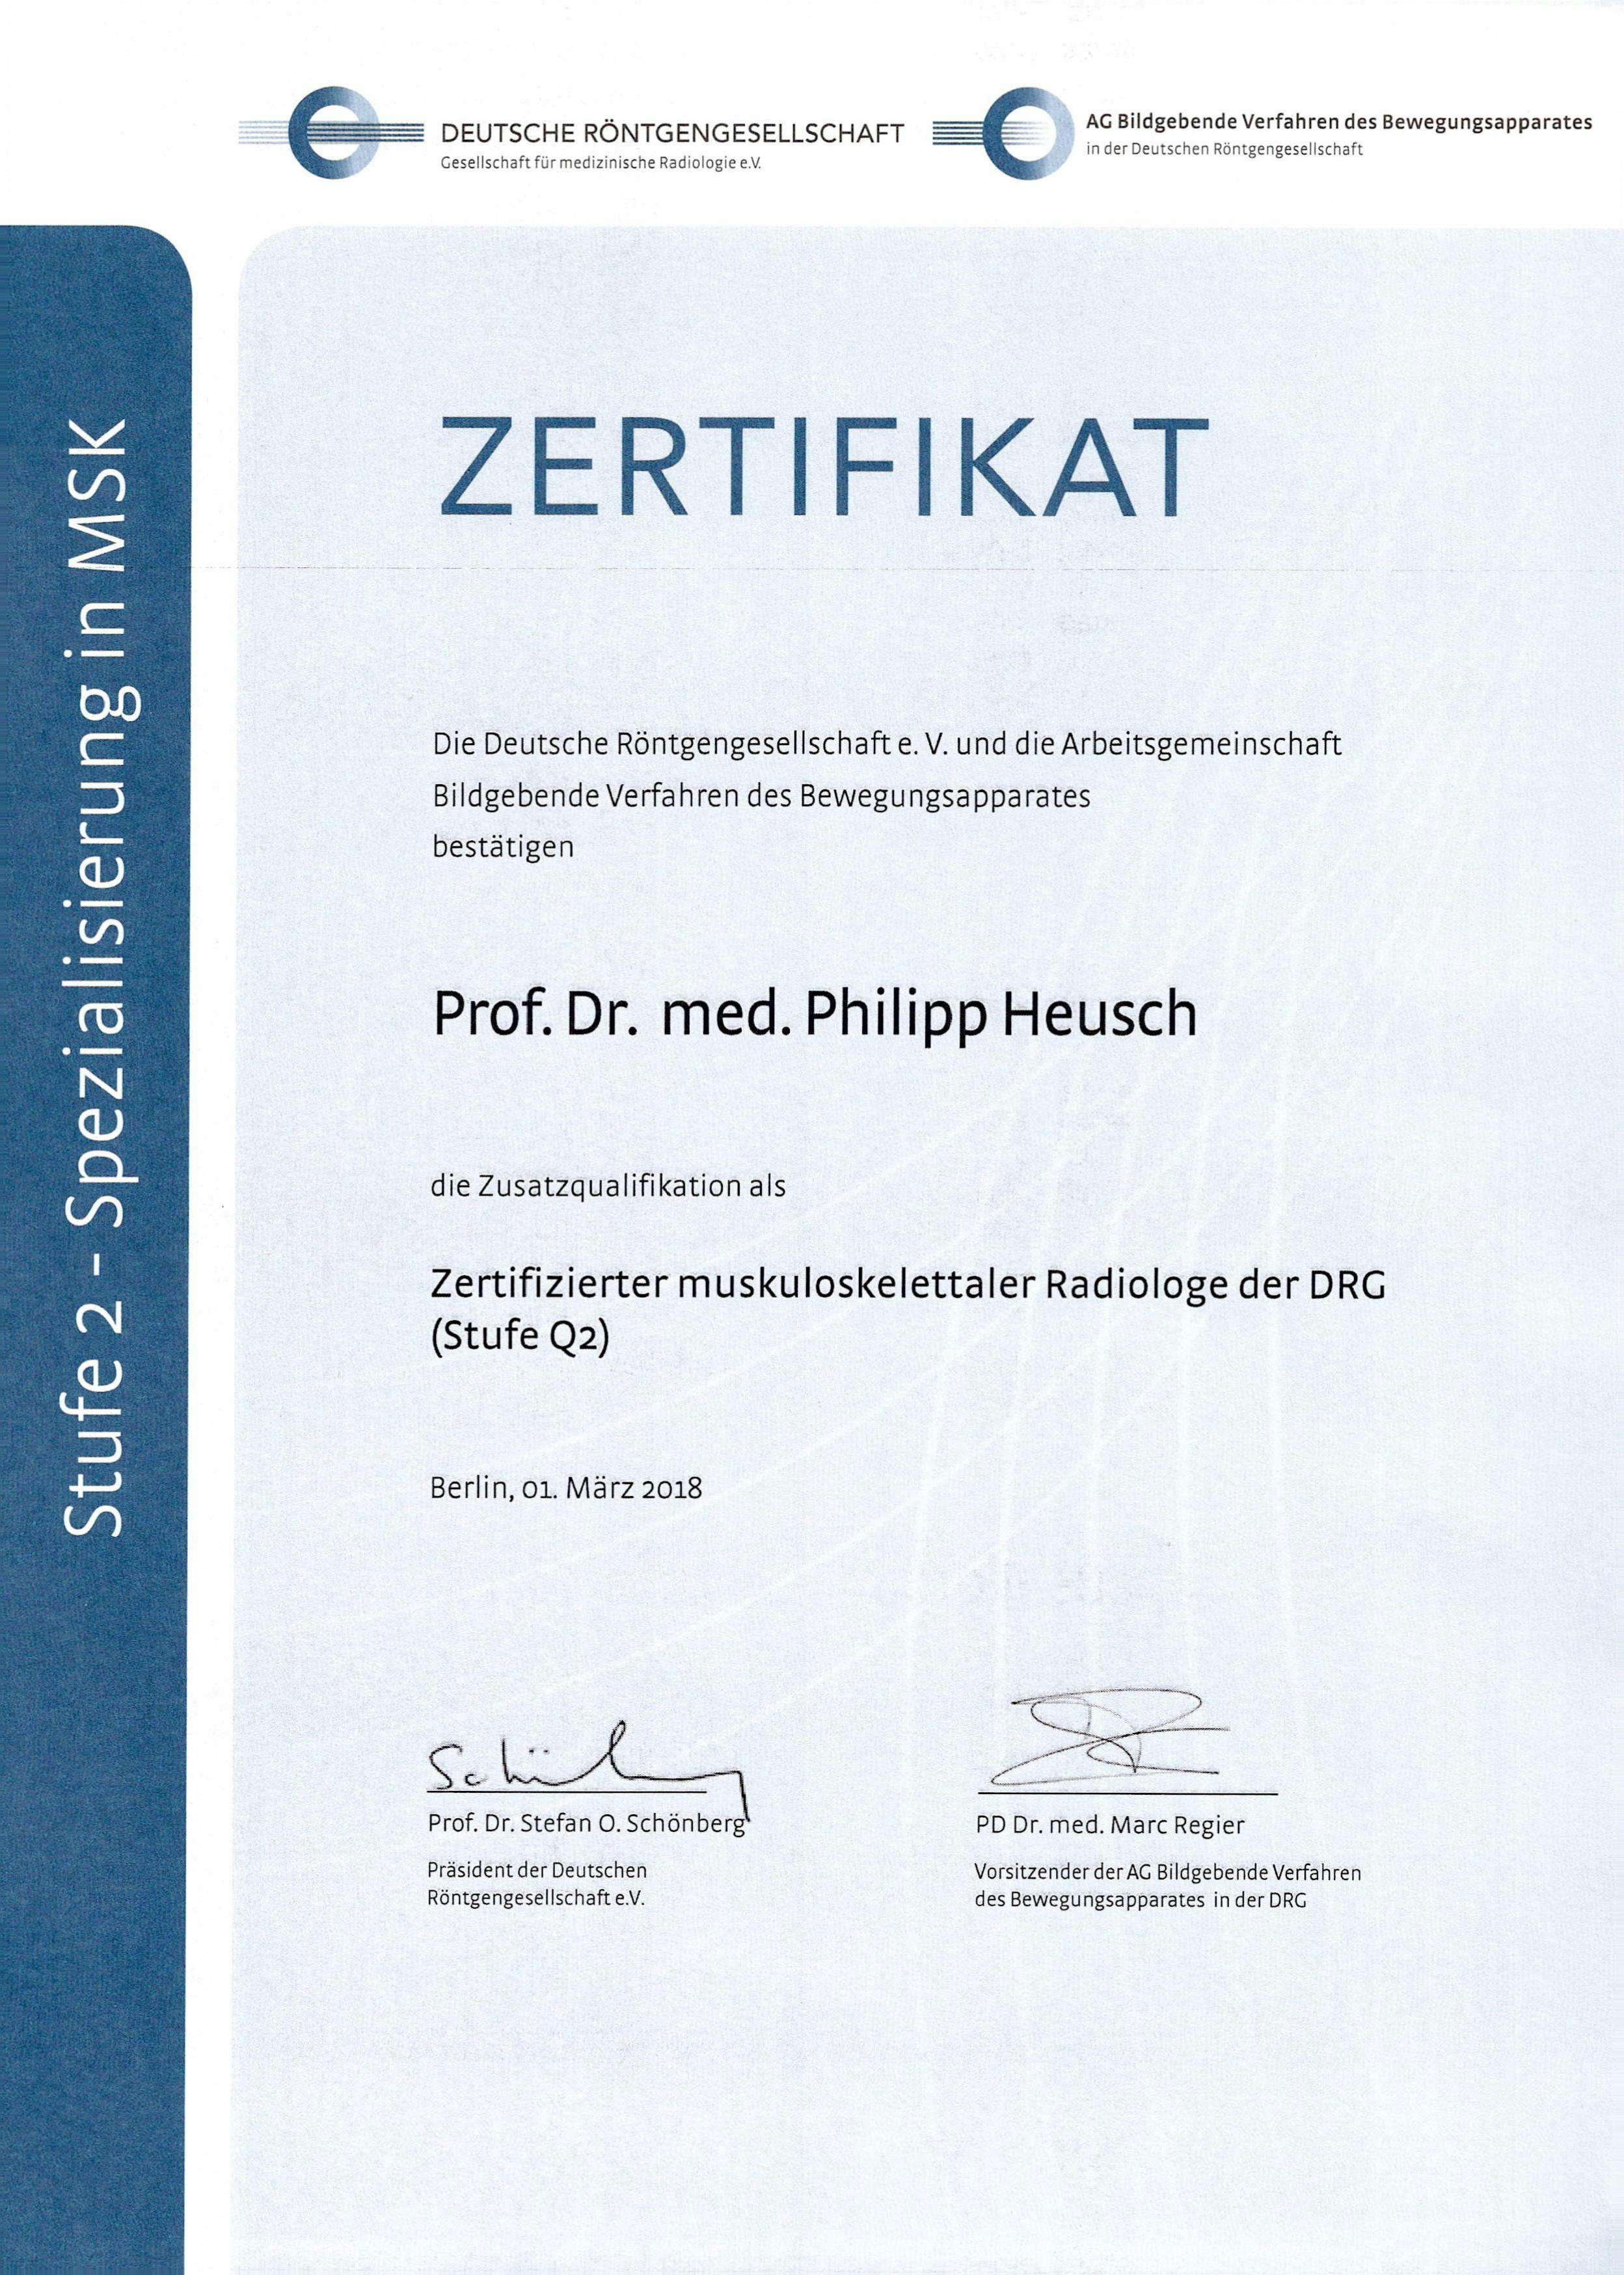 Zertifikat der Deutschen Röntgengesellschaft für Professor Dr. med. Philipp Heusch als zertifizierter Zertifizierter muskuloskelettaler Radiologe (Stufe Q2)